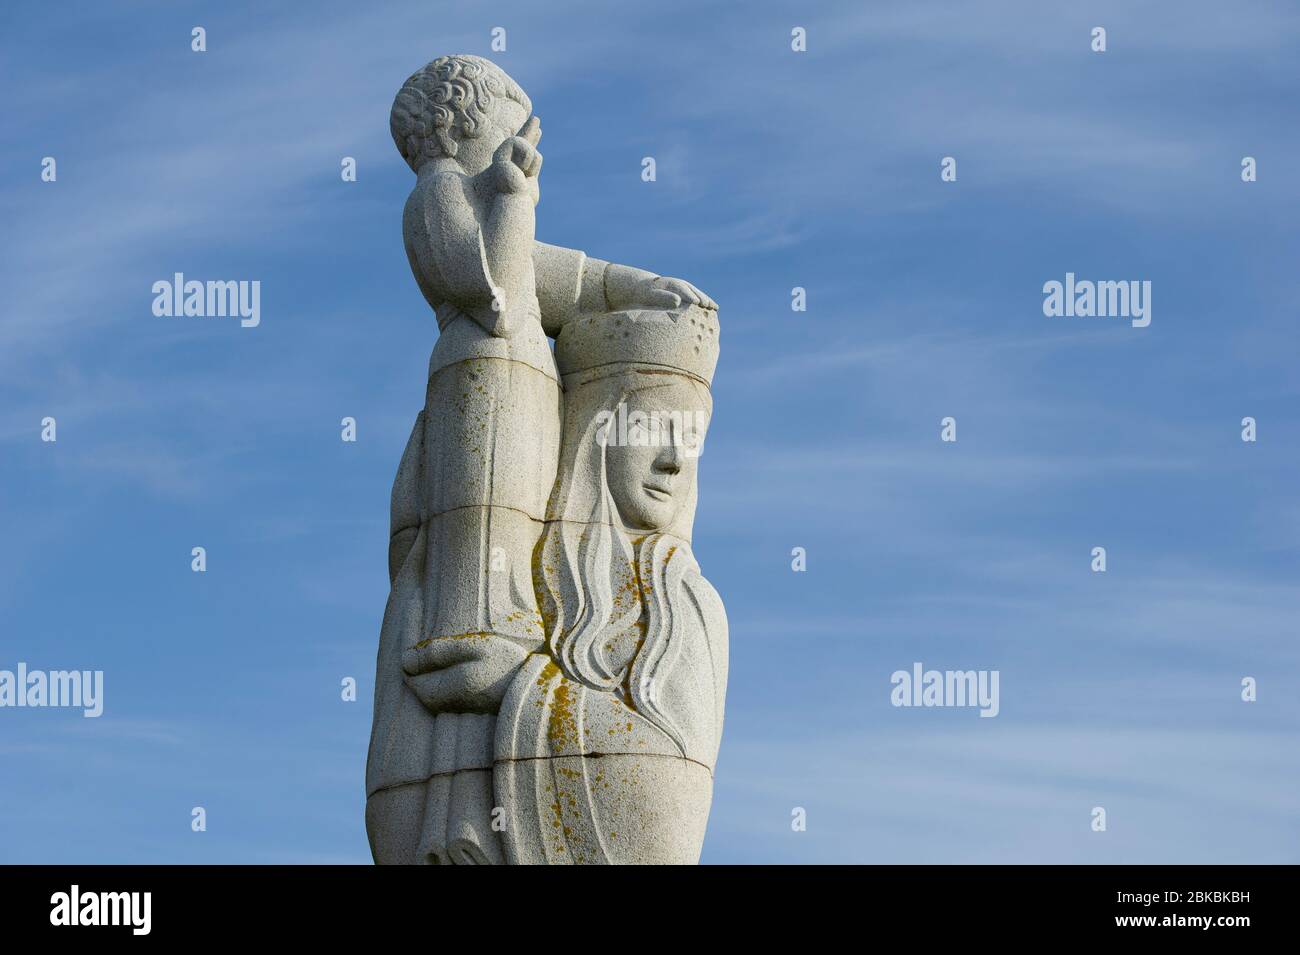 Unsere Liebe Frau von den Inseln von Hew Lorimer. Die Skulptur der Madonna mit Kind befindet sich an den Hängen von Ruabhal, South Uist in den Äußeren Hebriden, Schottland. Stockfoto